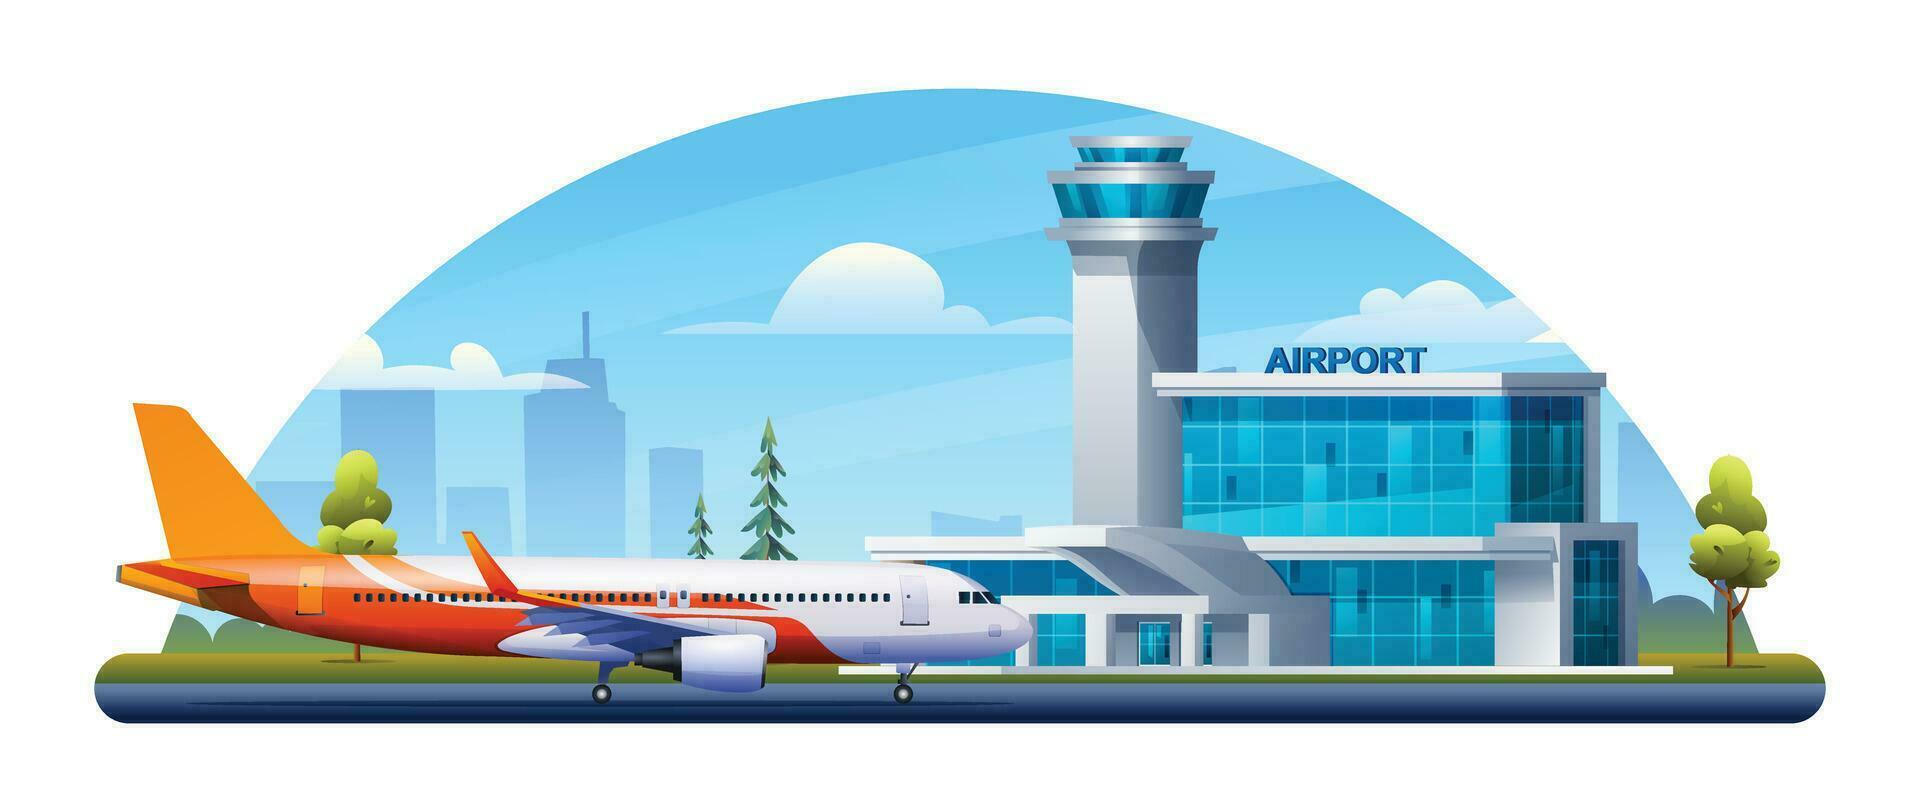 internacional aeropuerto edificio con avión, Terminal, portón y pista en paisaje urbano vector dibujos animados ilustración